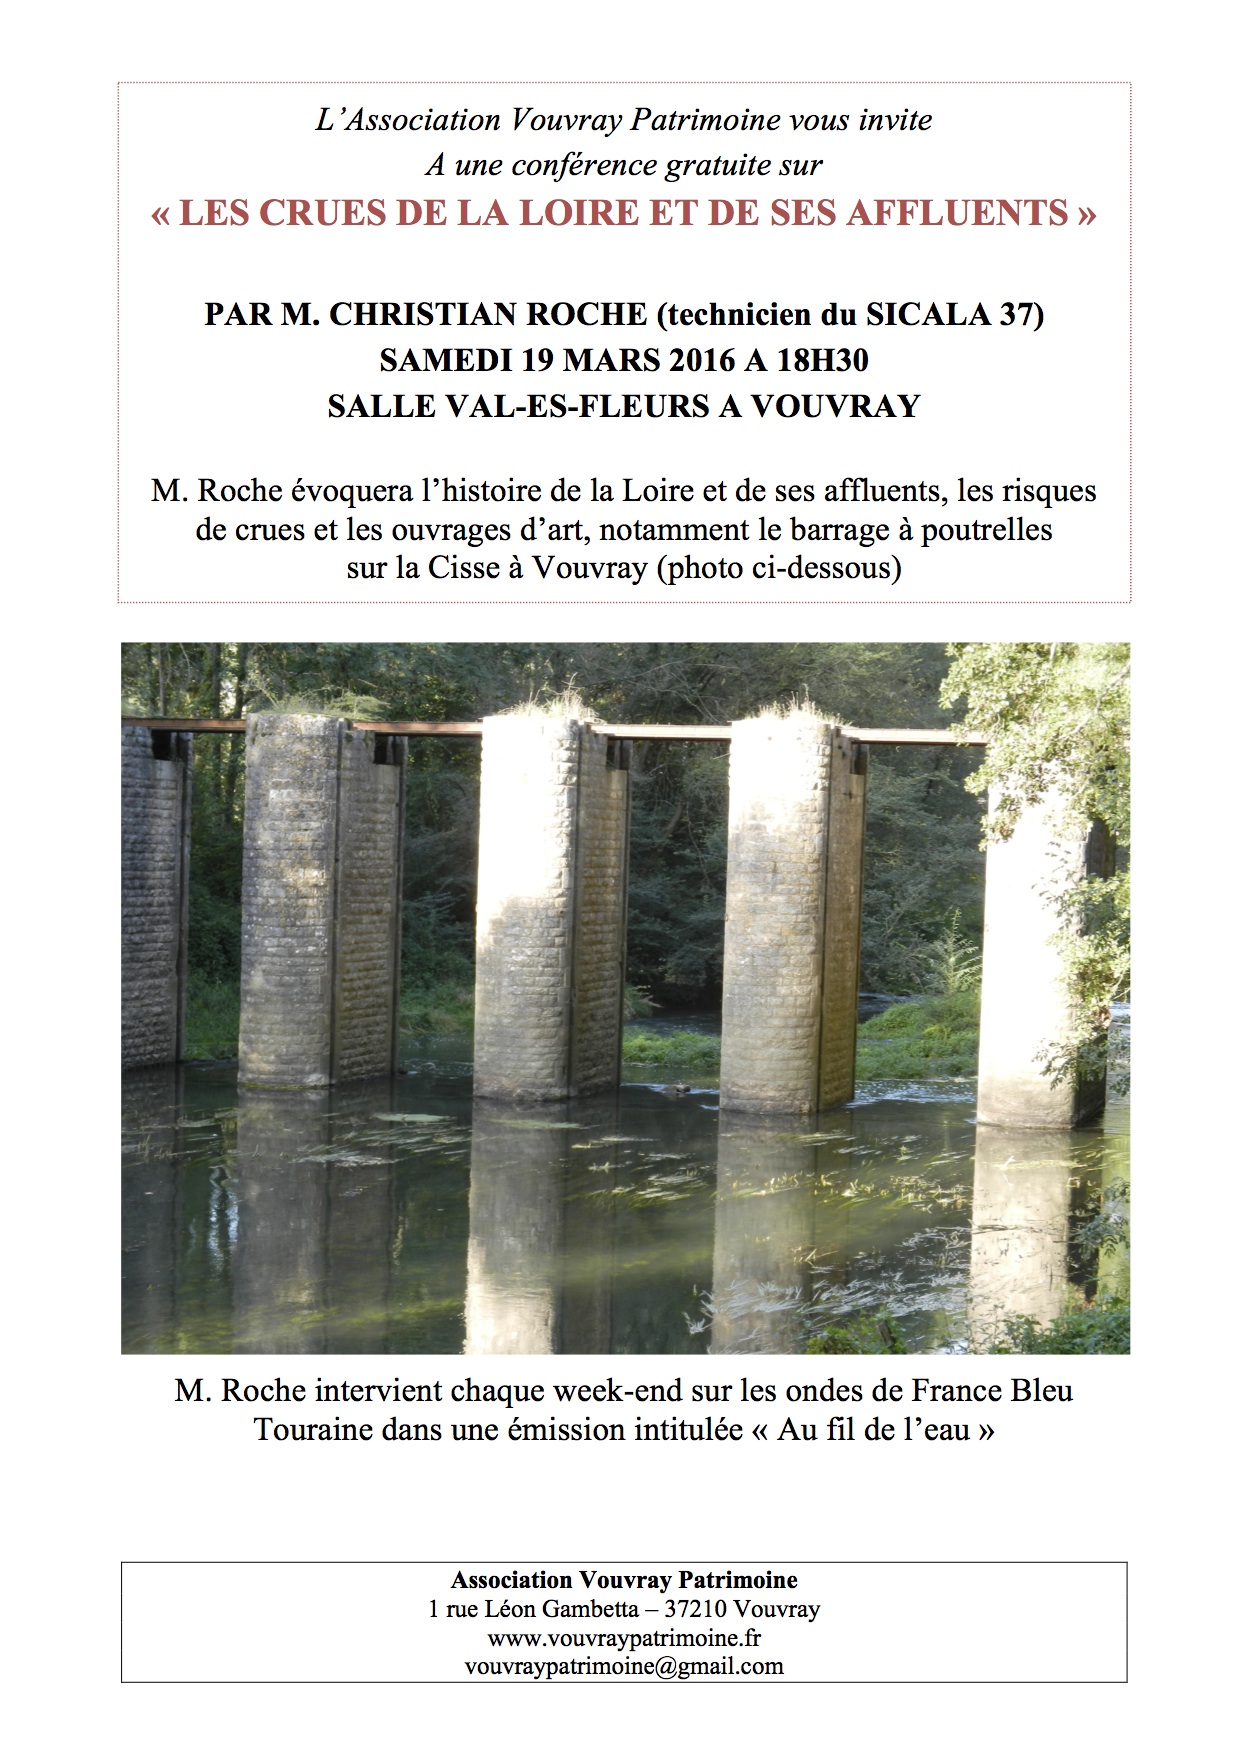 Conférence de M. ROCHE sur La Loire et ses affluents